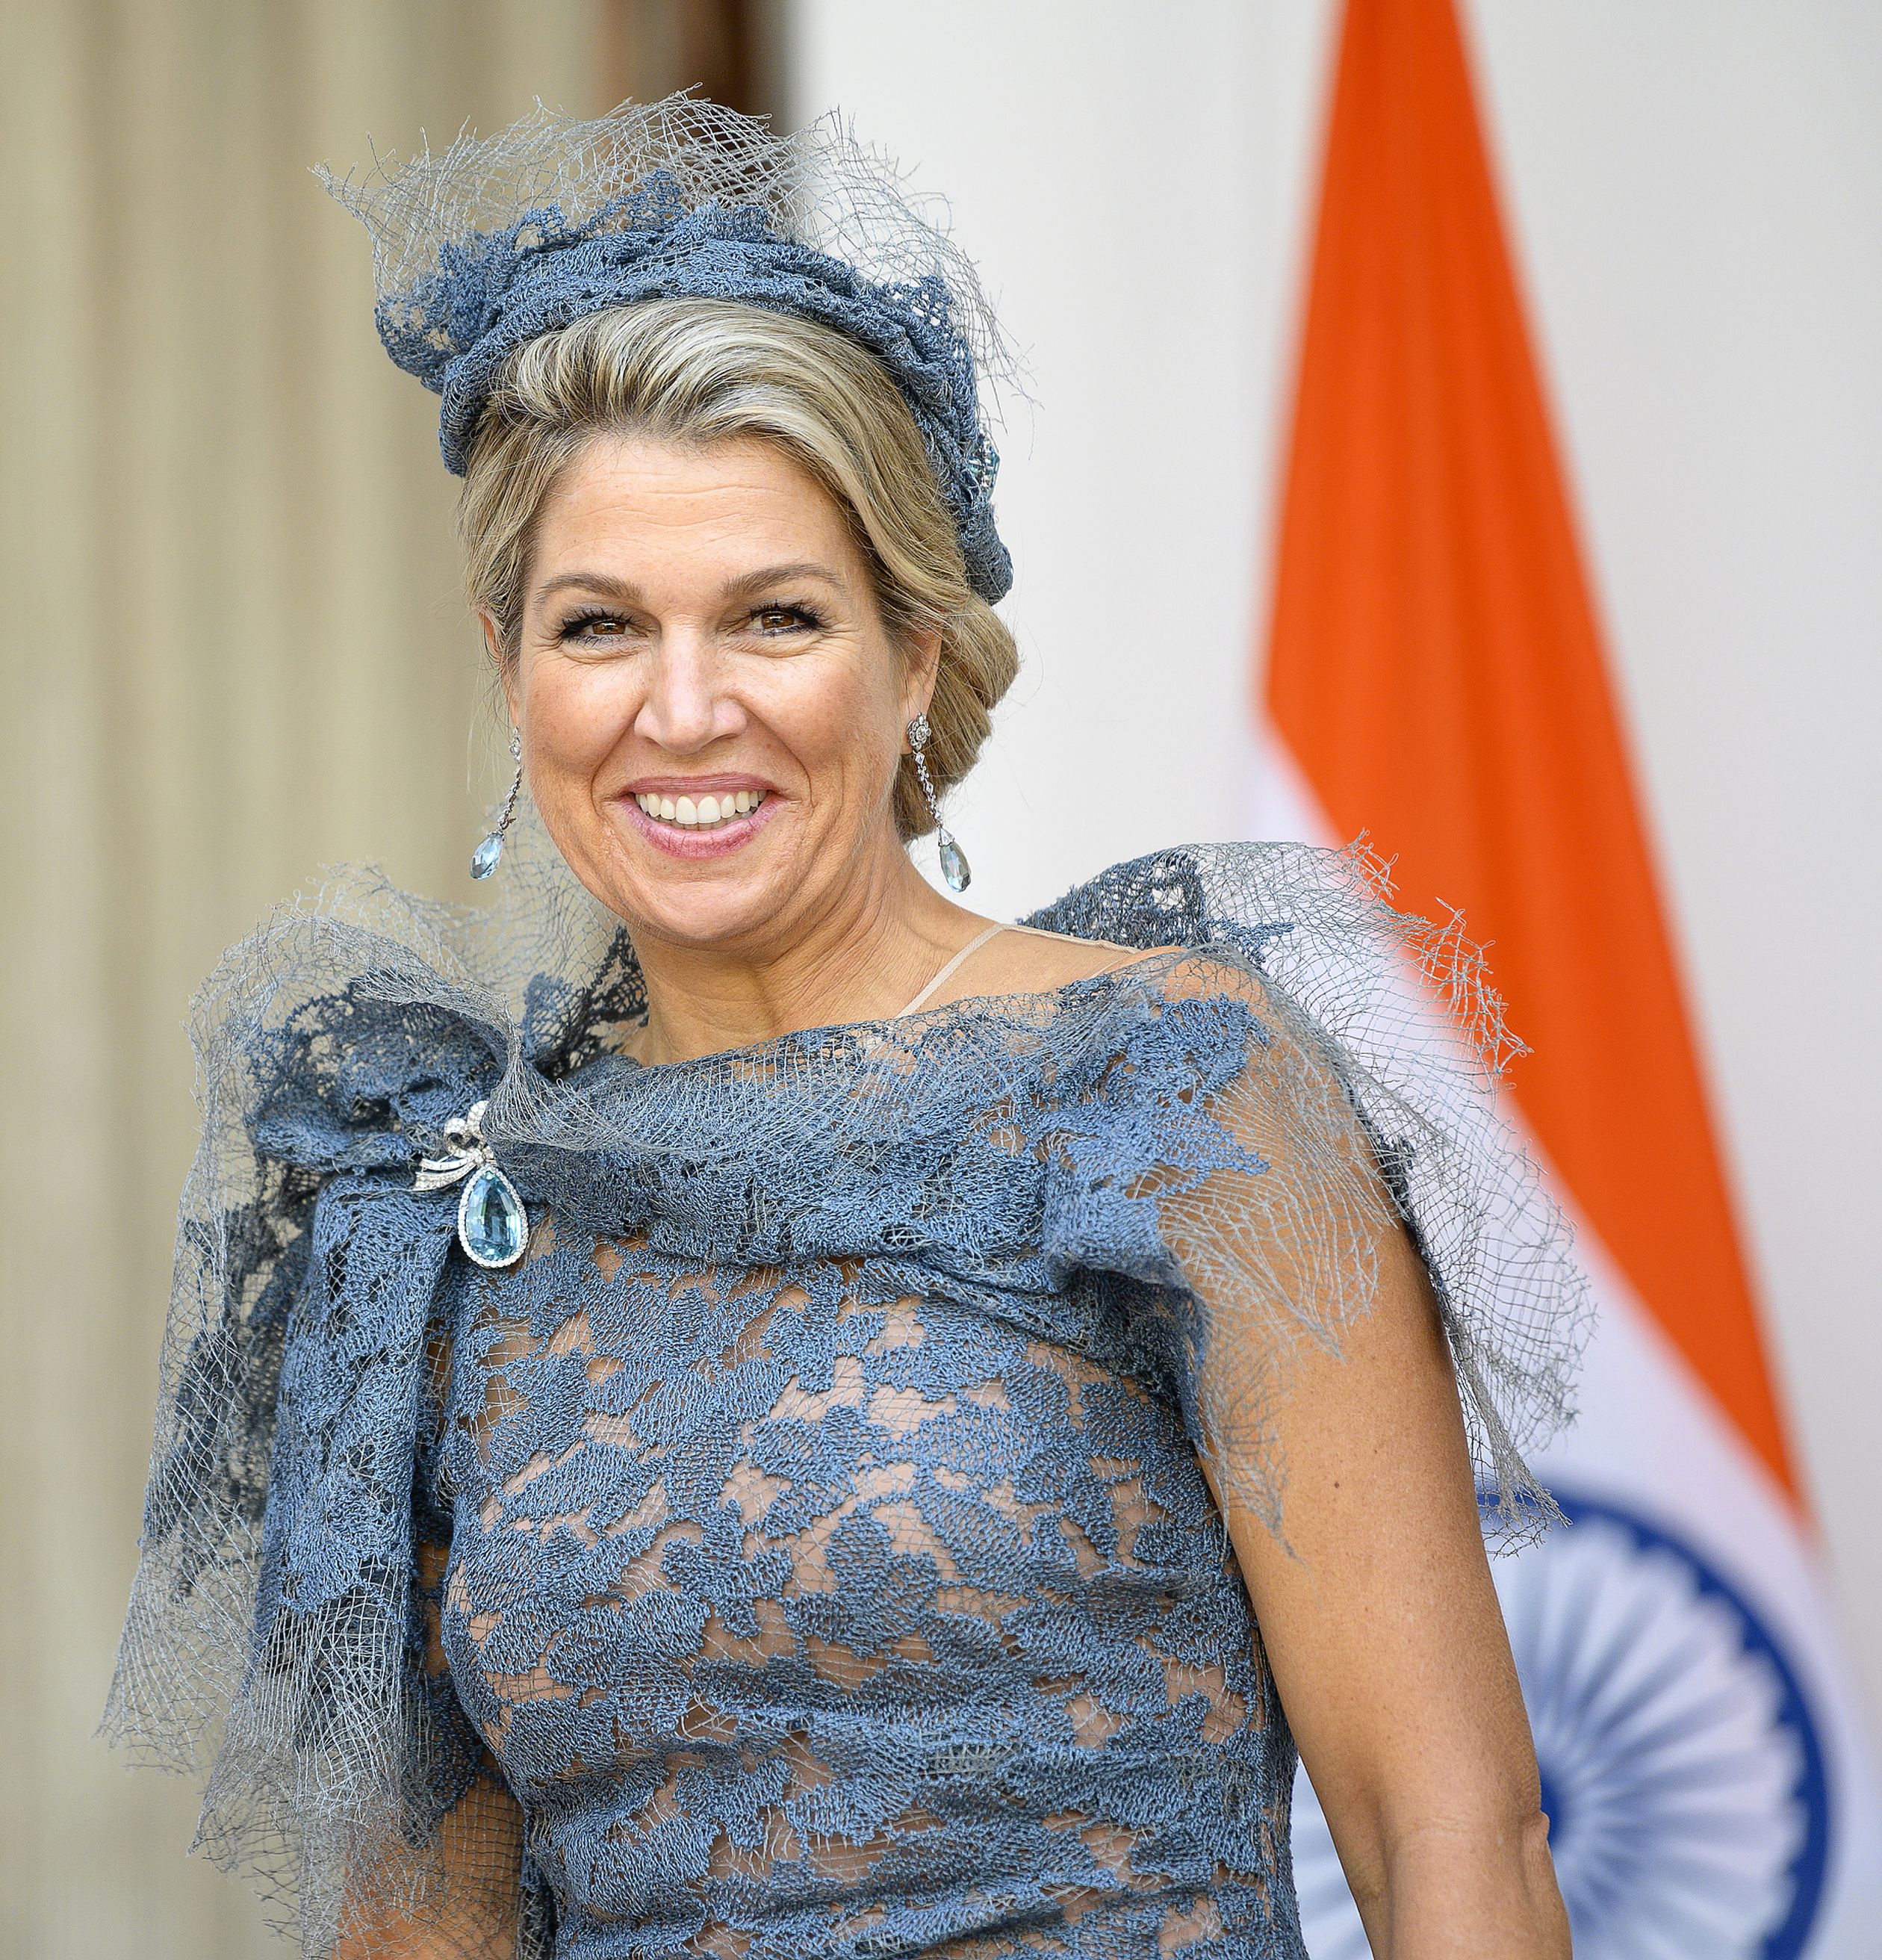 Koningin Máxima draagt een nieuwe jurk van Edouard Vermeulen van modehuis Natan.